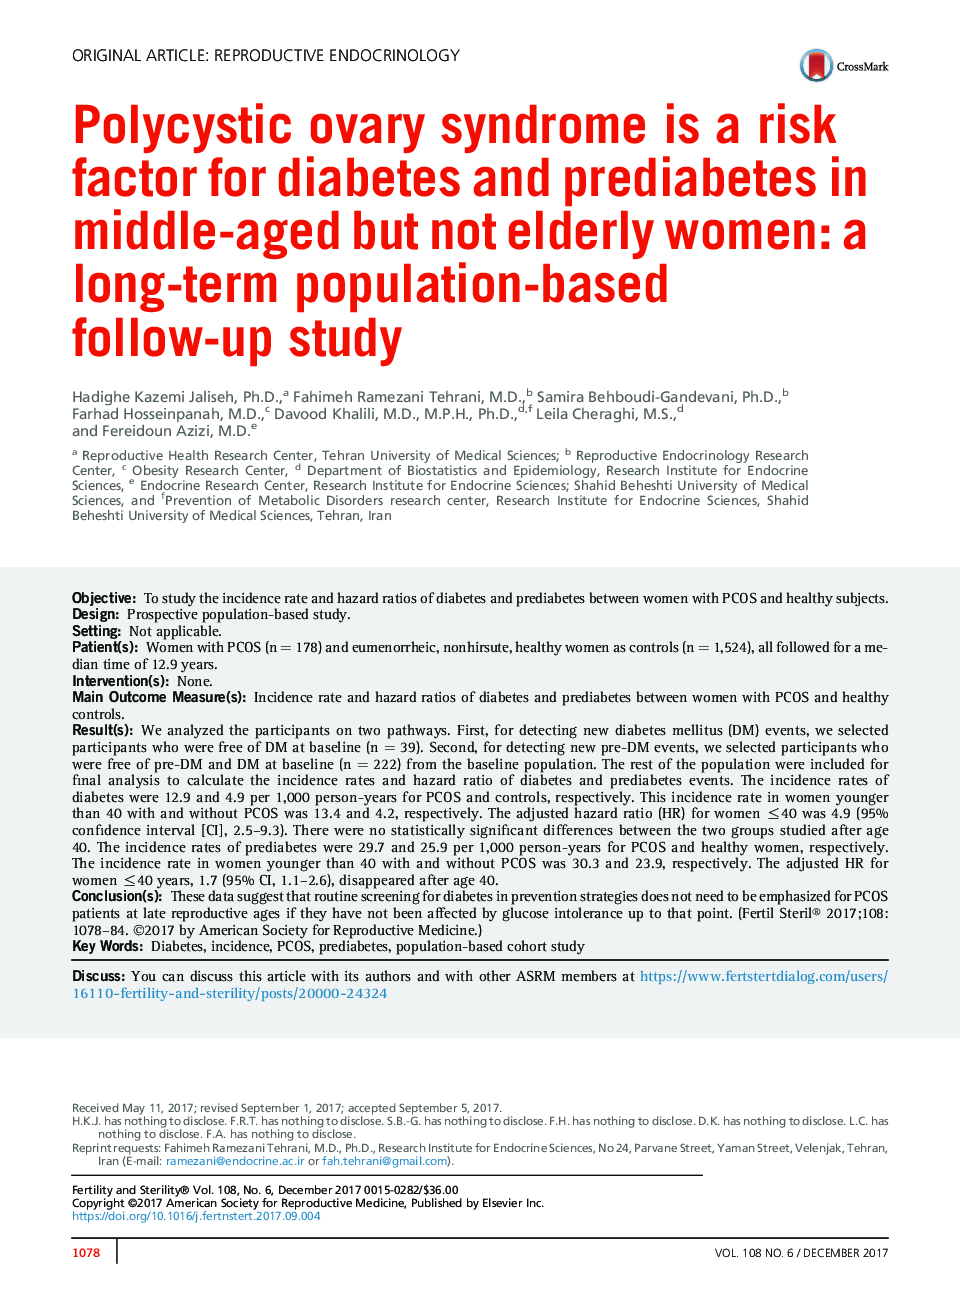 سندرم تخمدان پلیکیستیک یکی از عوامل خطر دیابت و پیش دیابت در زنان میانسال، اما نه سالمند است: یک مطالعه طولانی مدت مبتنی بر جمعیت 